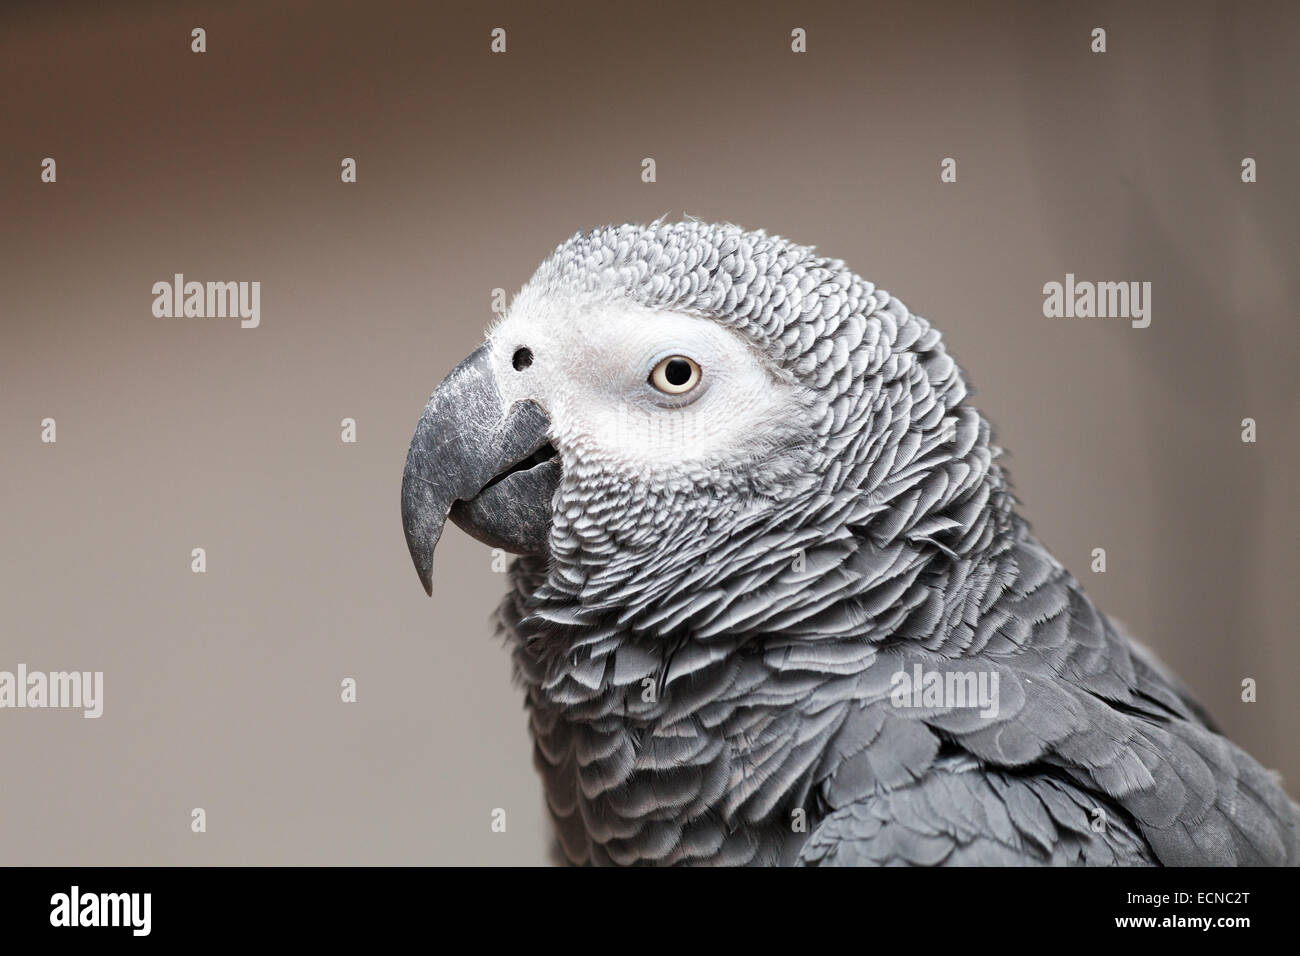 Seite Profil Schuss in den Kopf der ein afrikanisches Grau-Papagei, sie sind gesprächig Vogel oft als Haustiere gehalten und hervorragende Mimik. Stockfoto